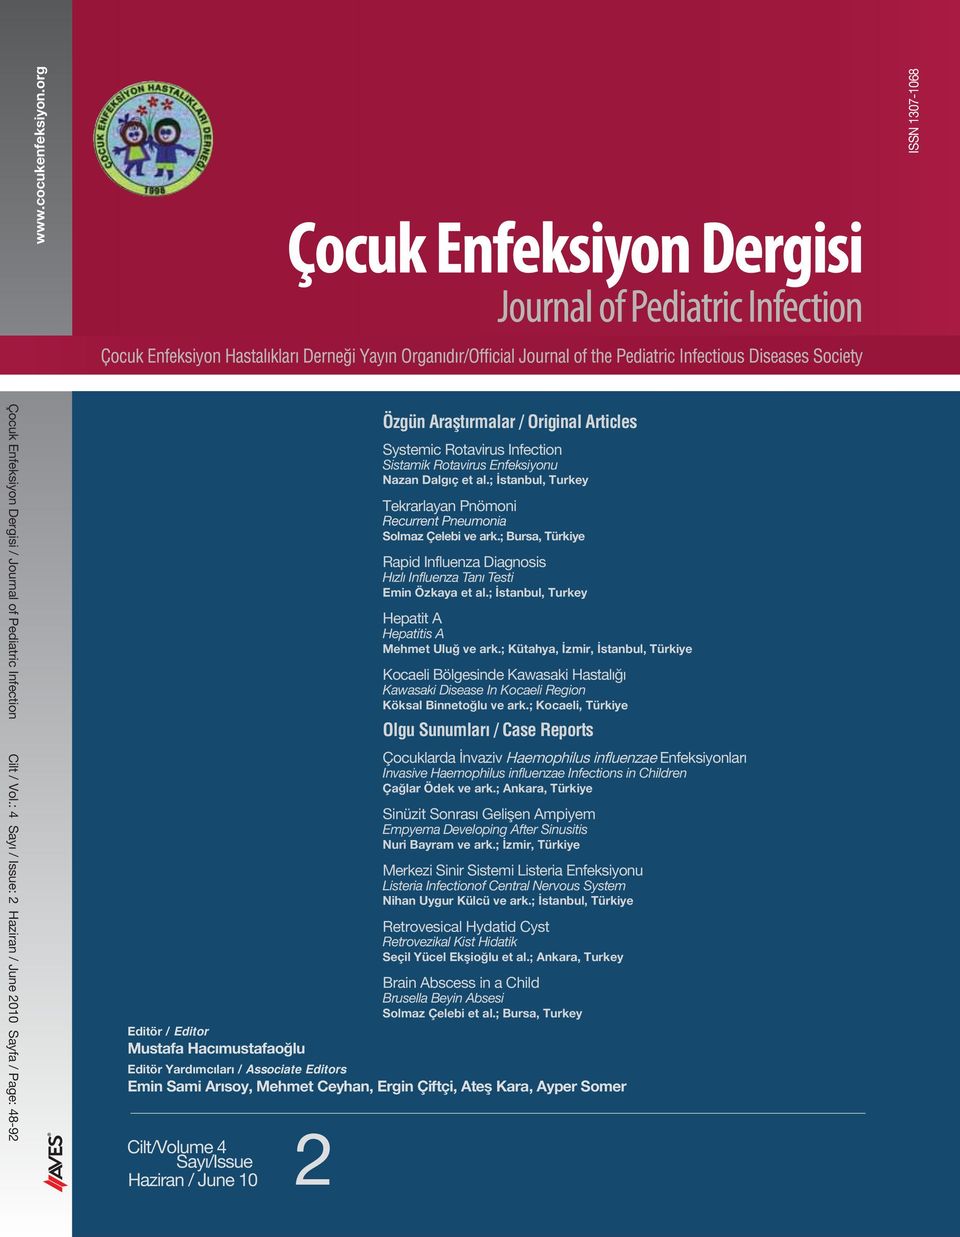 Ayper Somer Cilt/Volume 4 2 Sayı/Issue Haziran / June 10 Özgün Araştırmalar / Original Articles Systemic Rotavirus Infection Sistamik Rotavirus Enfeksiyonu Nazan Dalgıç et al.